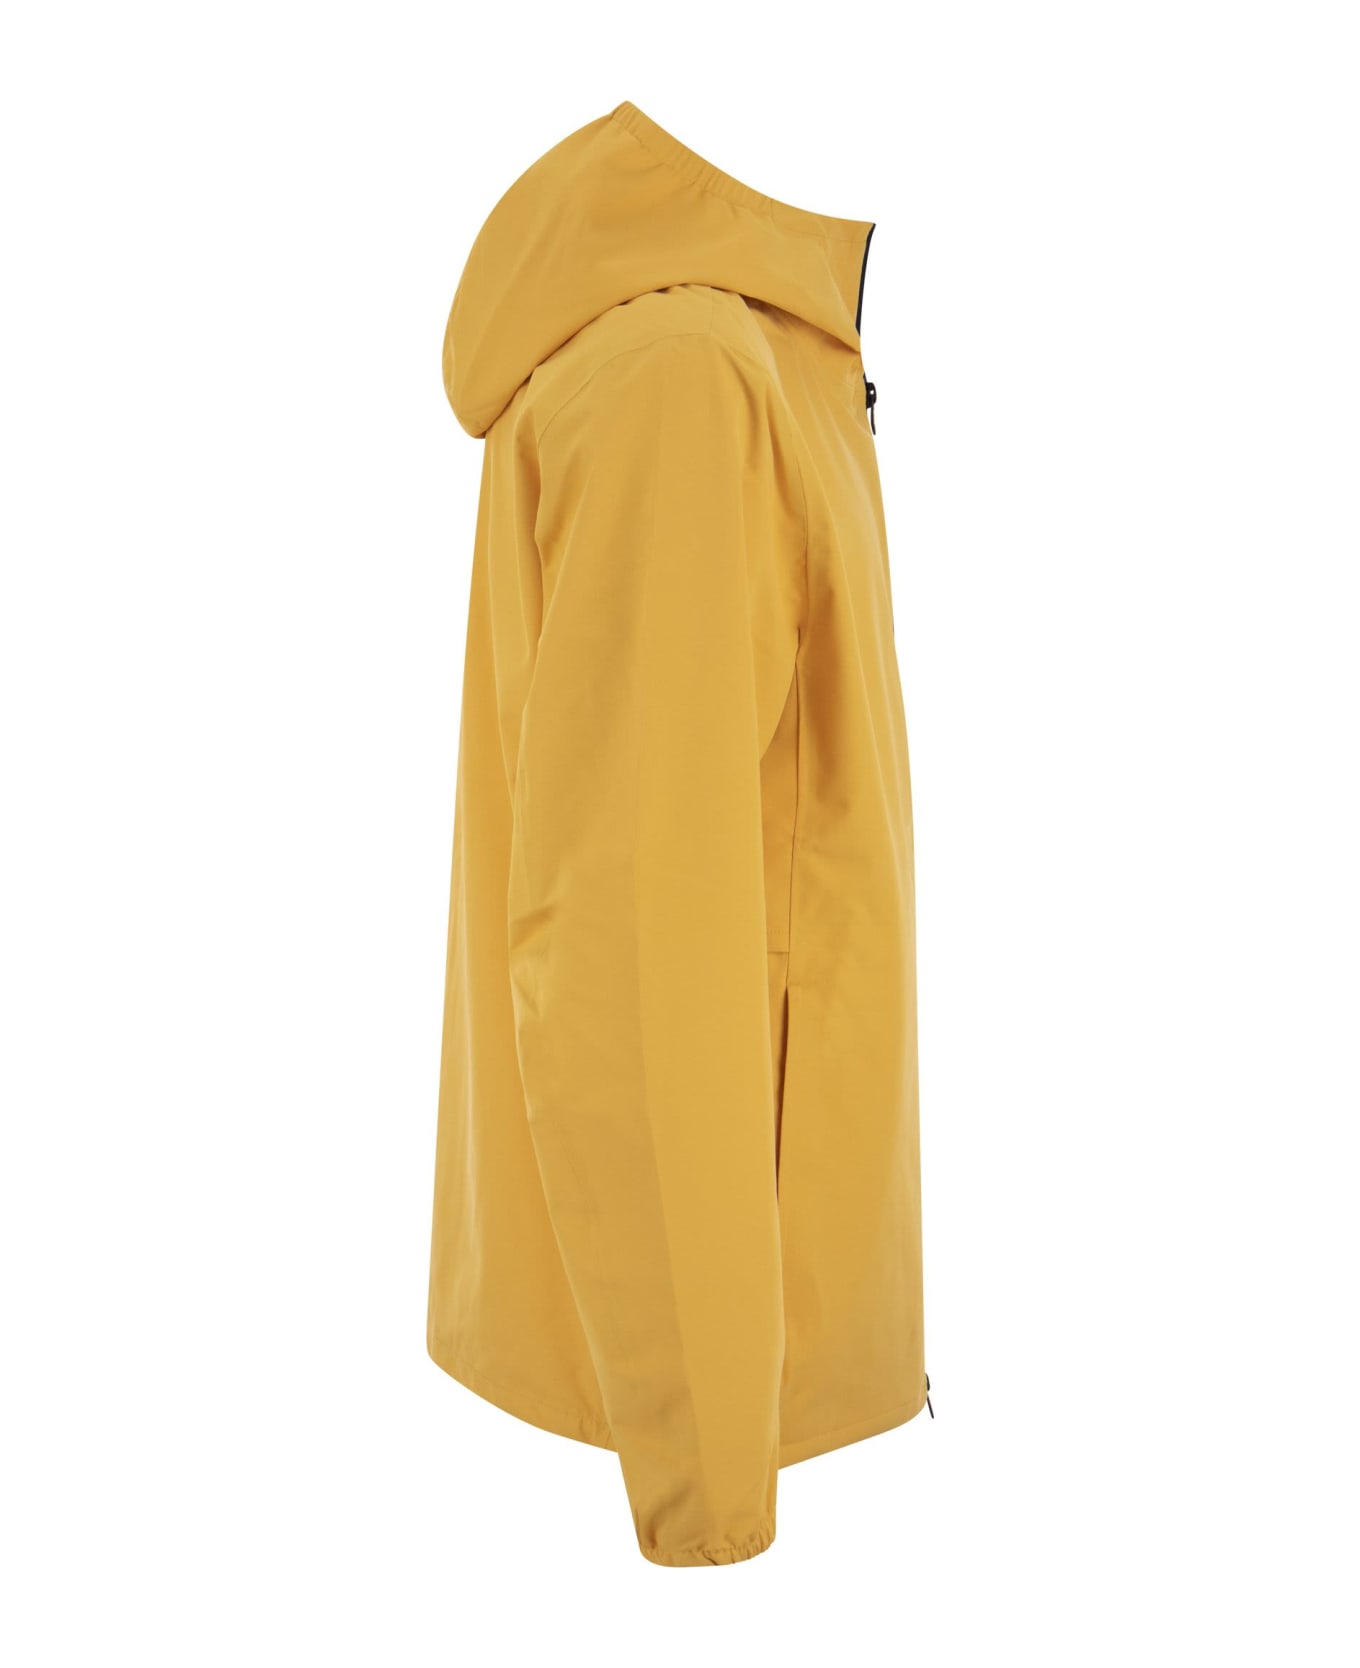 Woolrich Pacific - Waterproof Jacket With Hood - Mustard